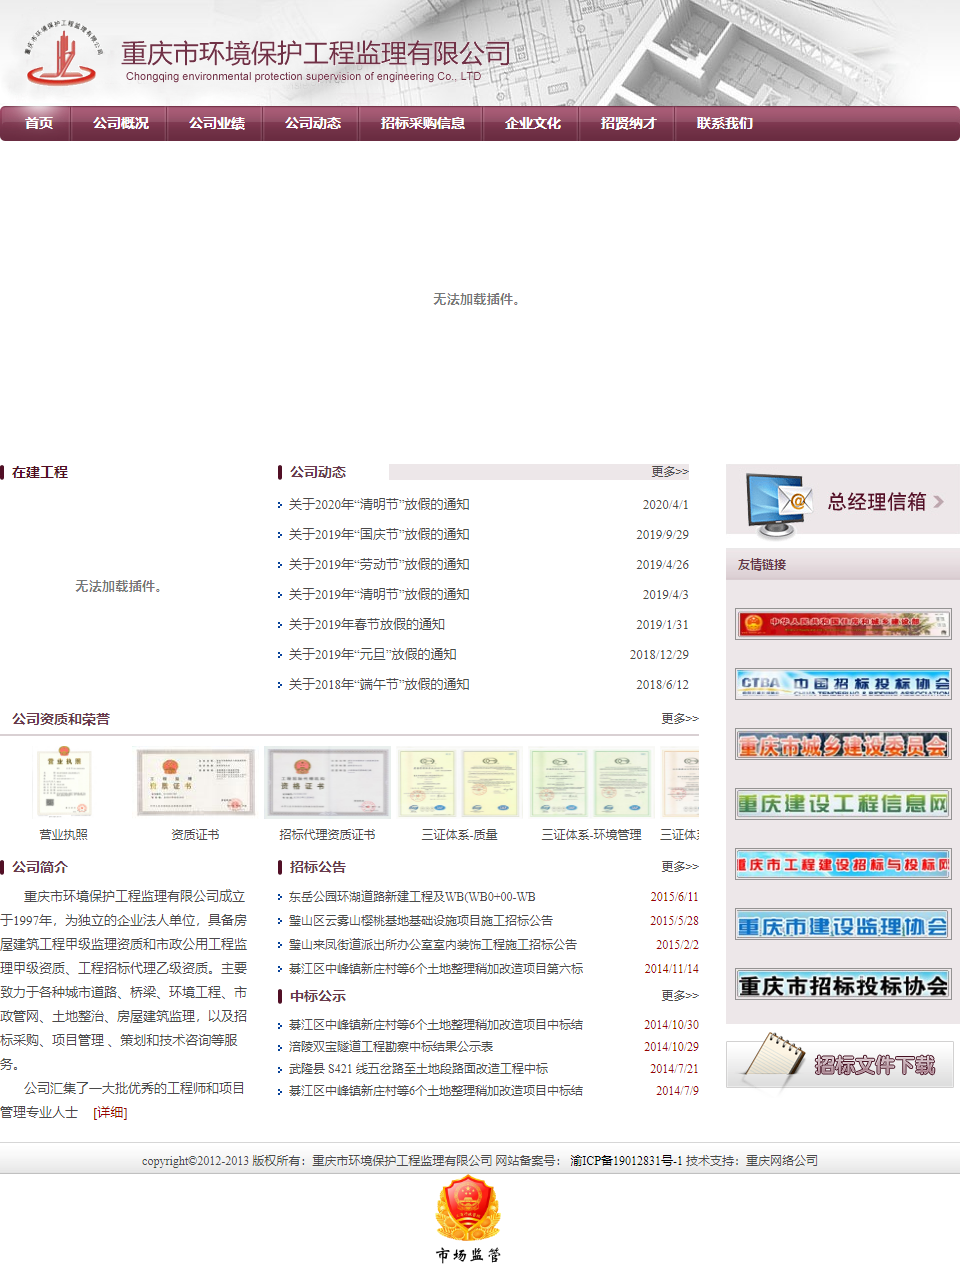 重庆市环境保护工程监理有限公司网站案例